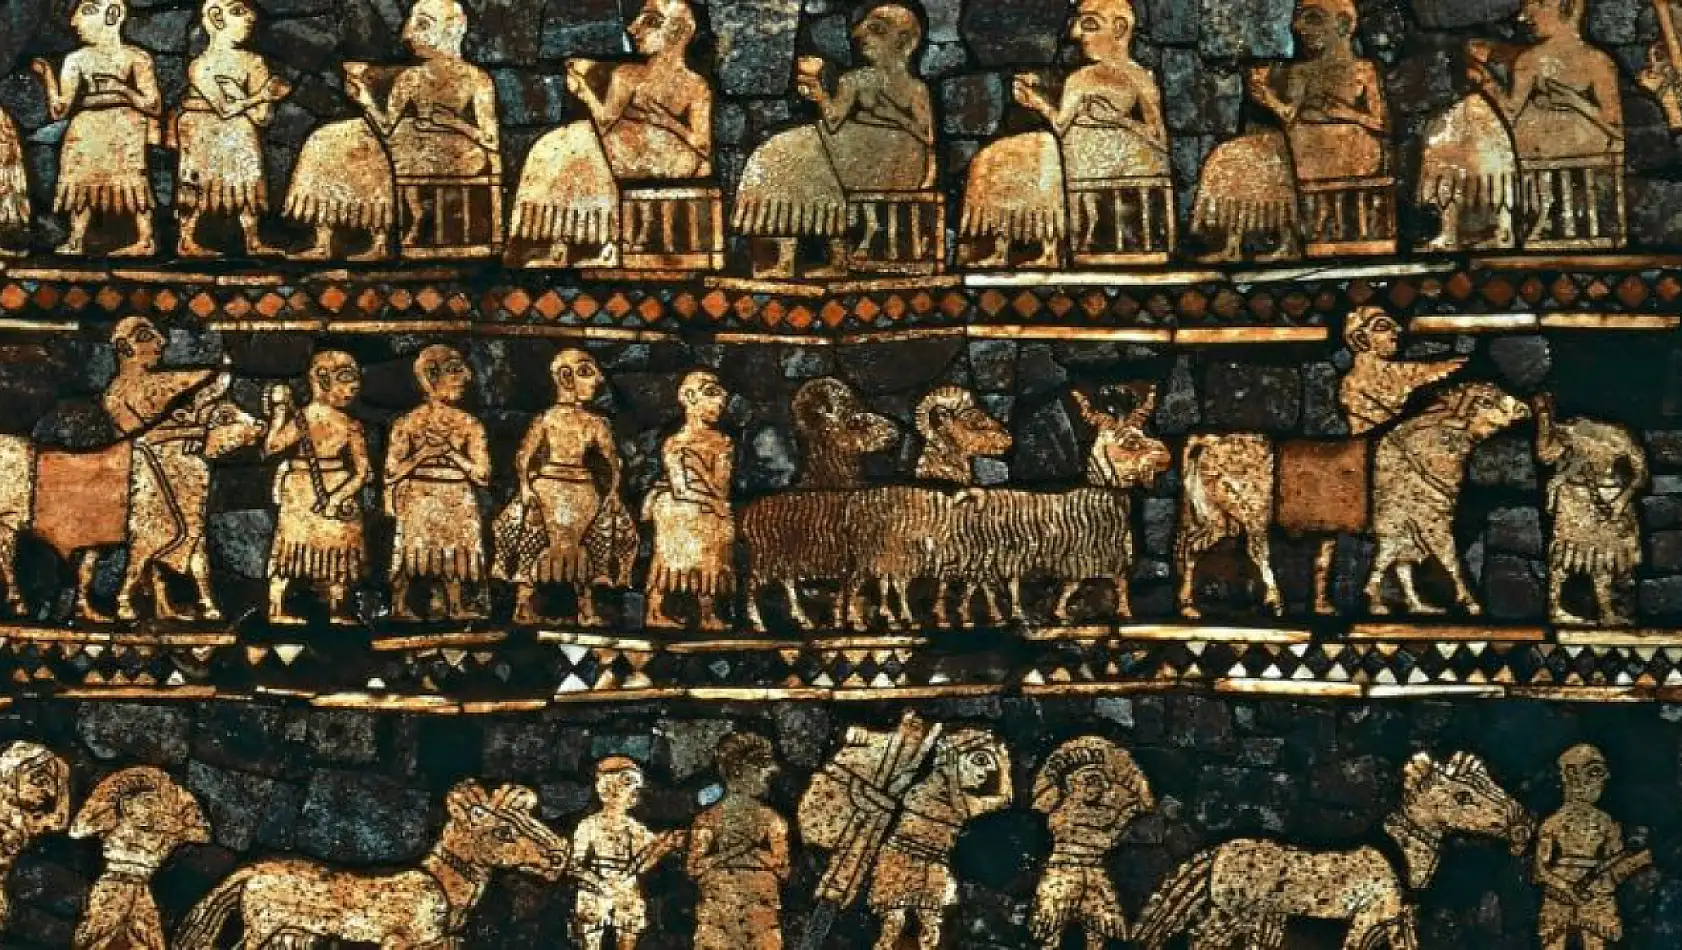 Sümerlerin gizemli tarihi: Eski uygarlığın keşfi ve etkileri